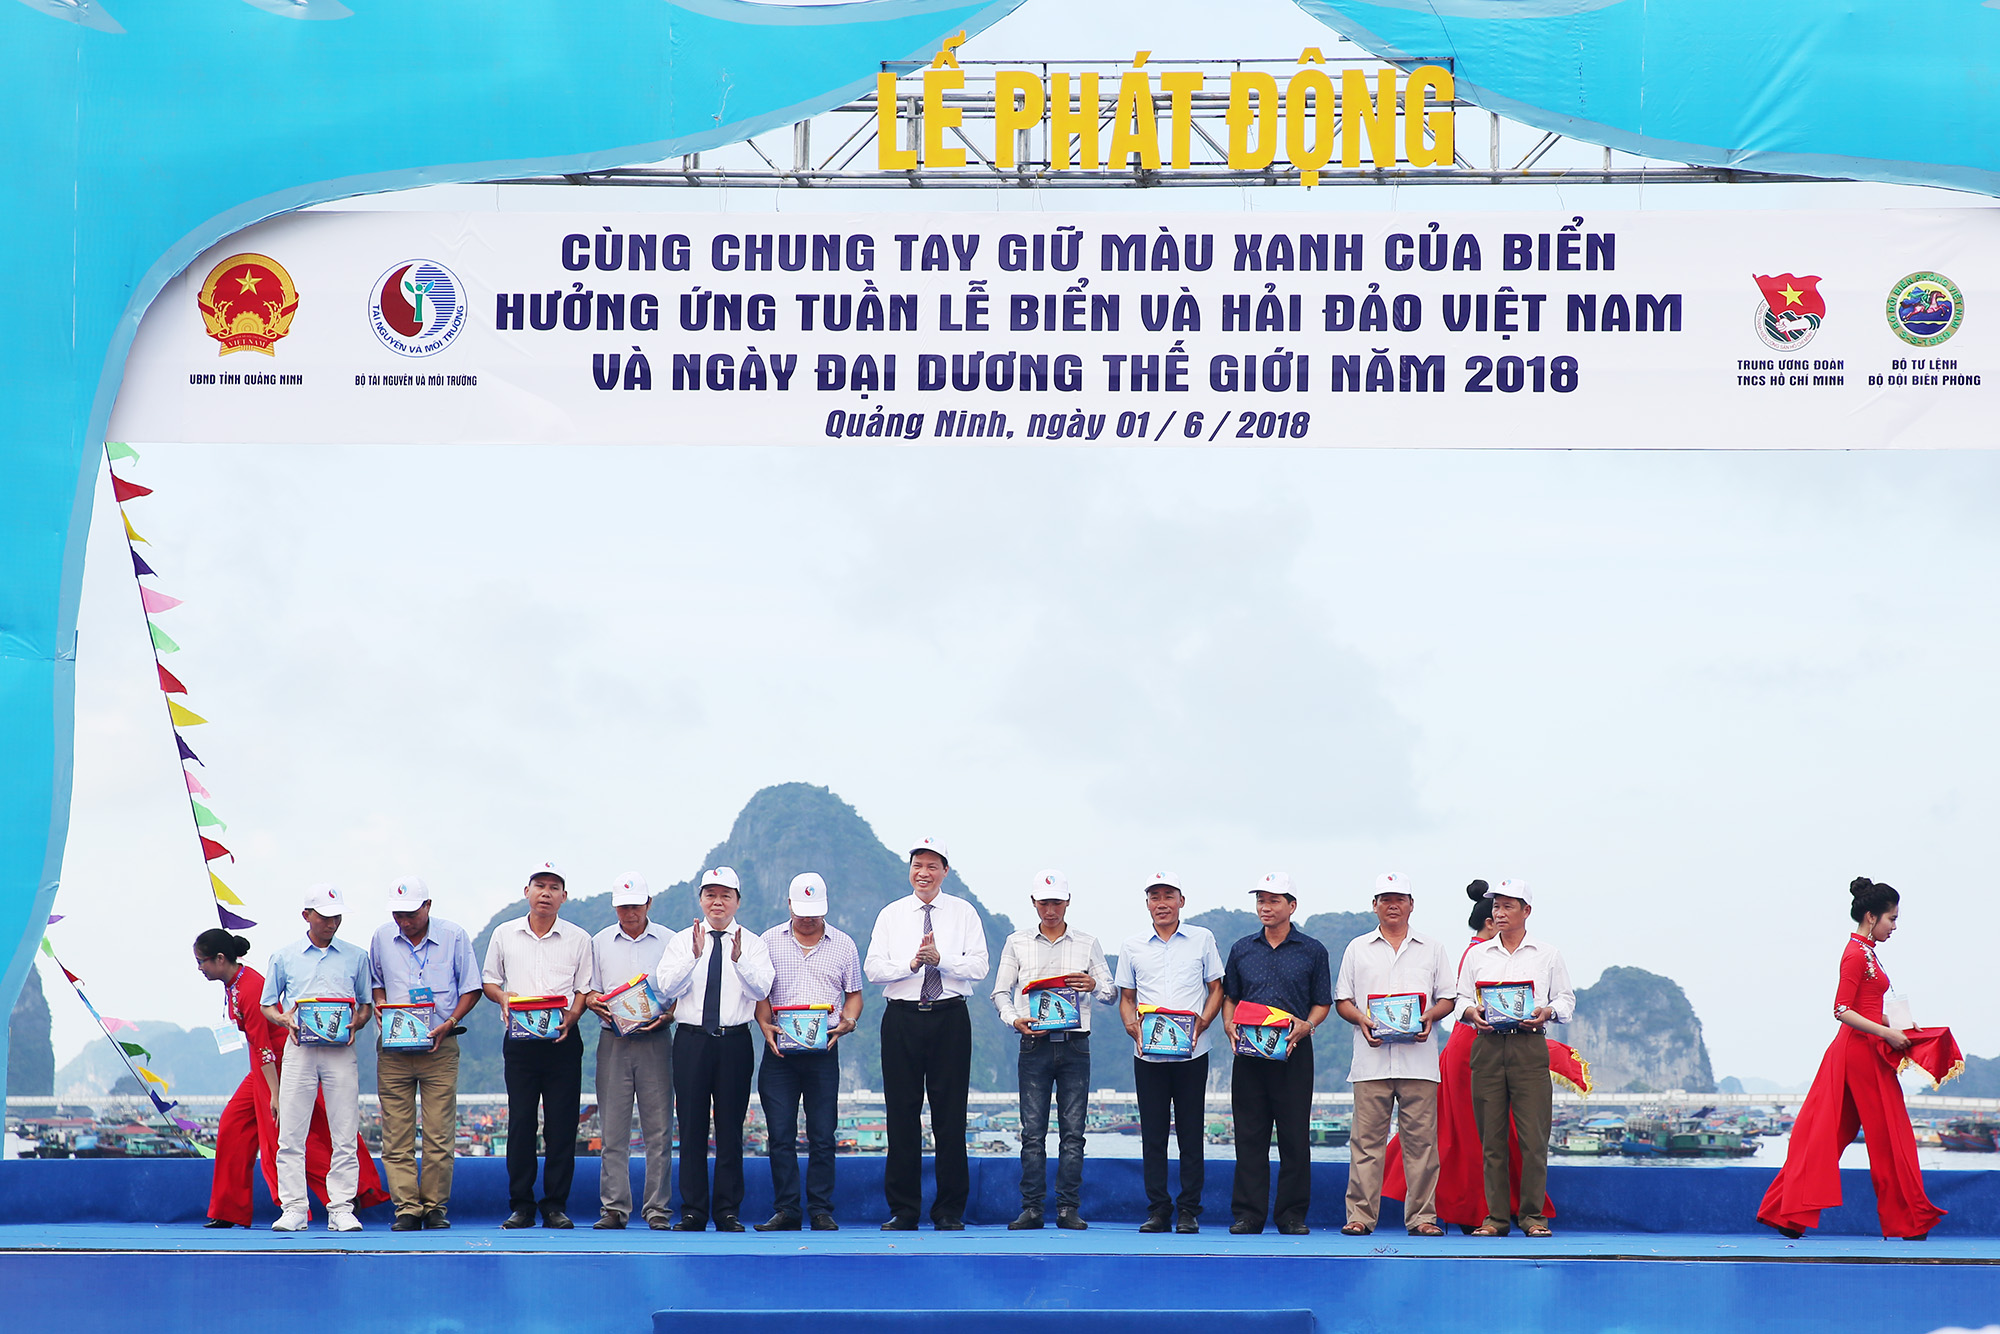 Lãnh đạo Trung ương và tỉnh Quảng Ninh trao tặng quà cho cán bộ, chiến sỹ, ngư dân tiêu biểu.